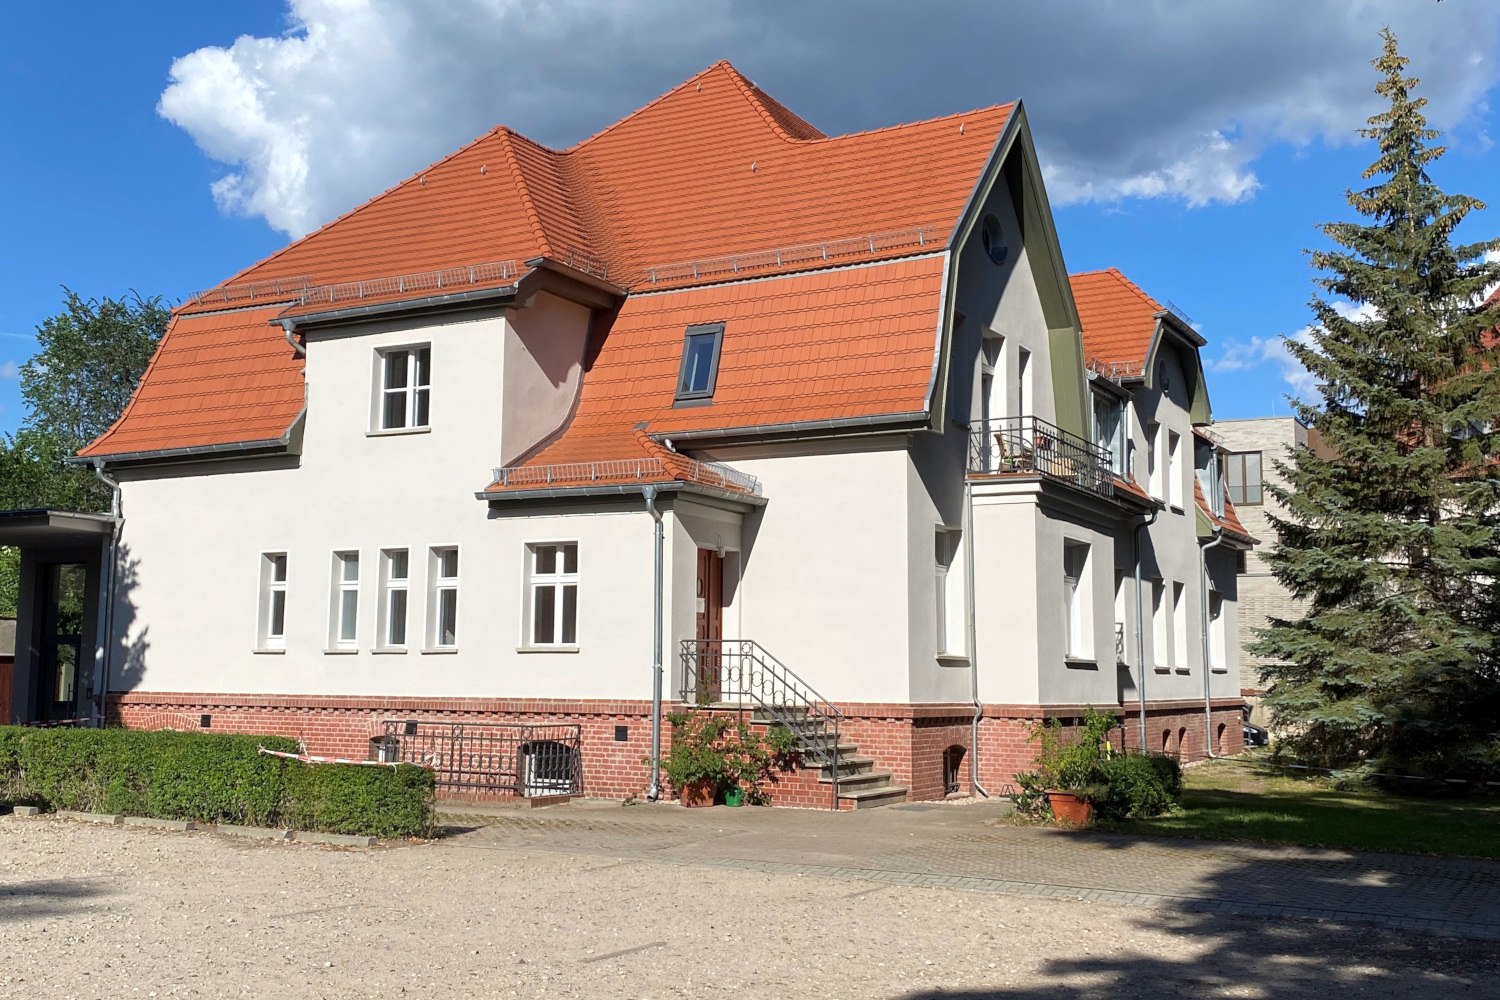 Bild vom Haus des Evangelischen Gemeindezentrums an der Kreuzkirche in Königs Wusterhausen